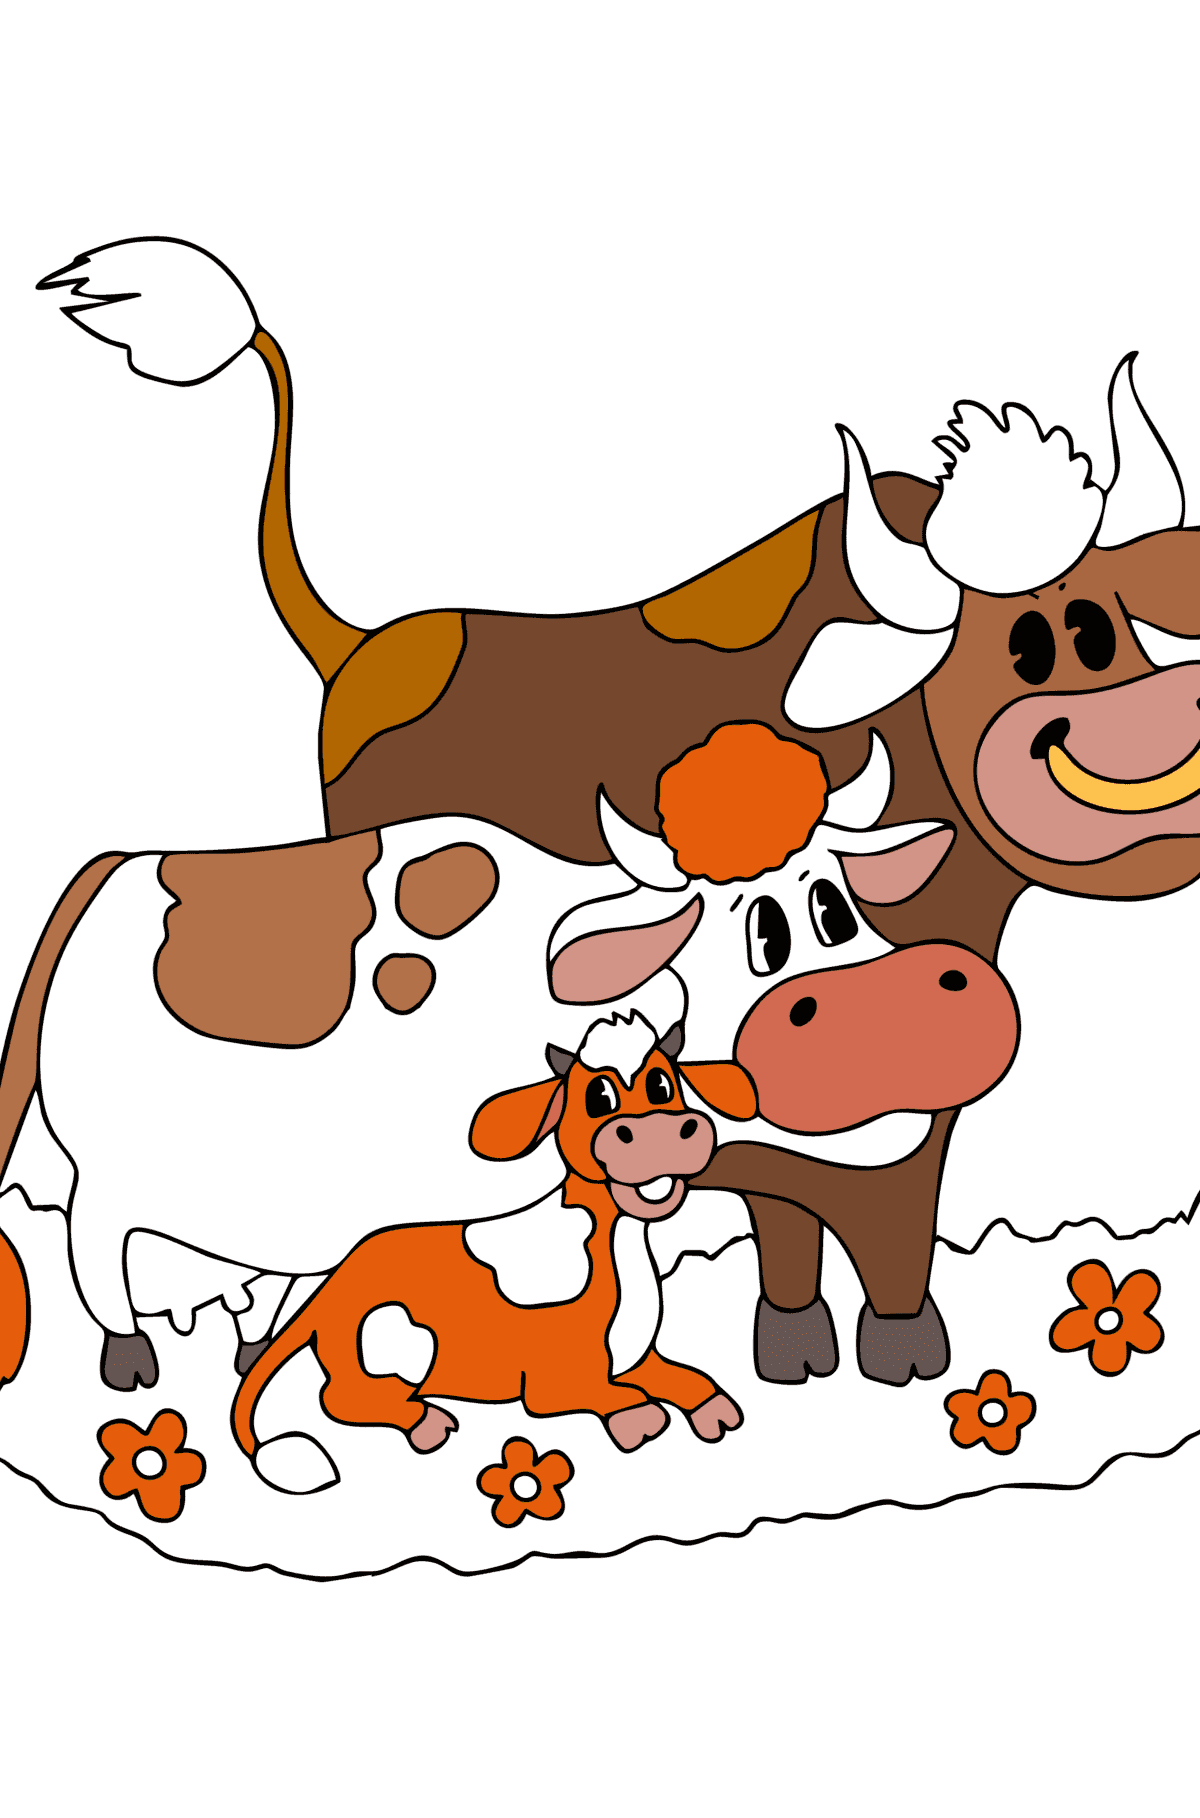 Disegno da colorare di mucca, toro e vitello - Disegni da colorare per bambini